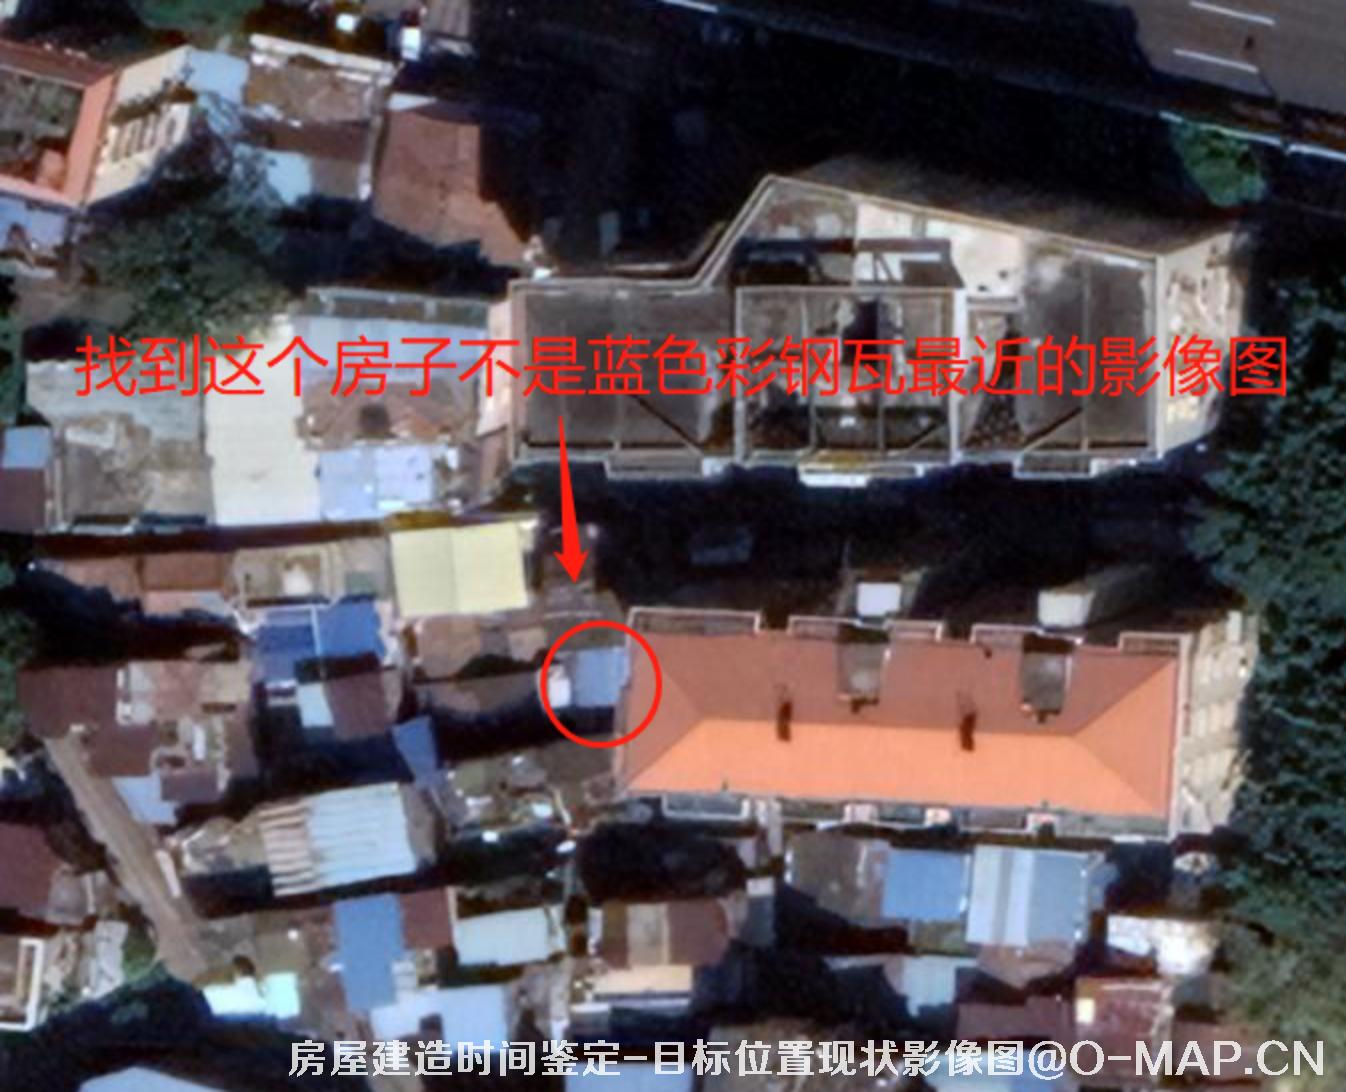 卫星影像用于房屋建造房屋改建时间鉴定